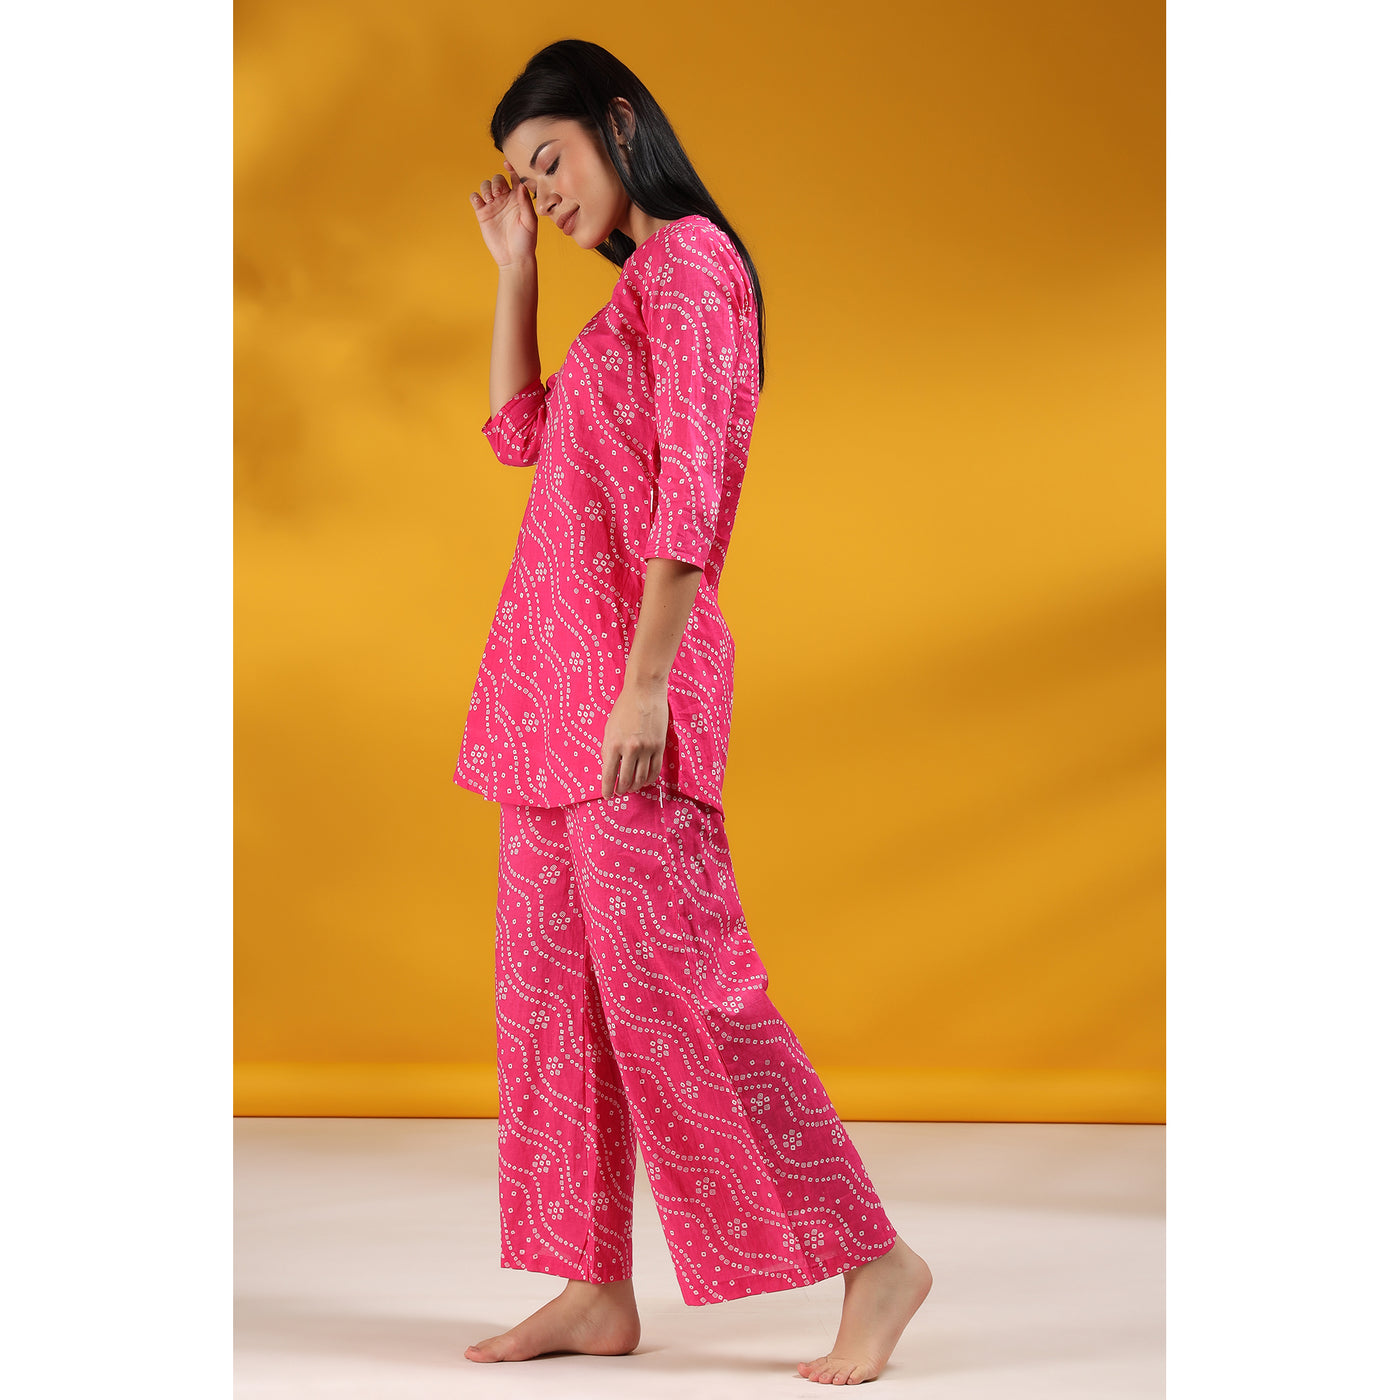 Patterned Bandhej on Pink Loungewear set